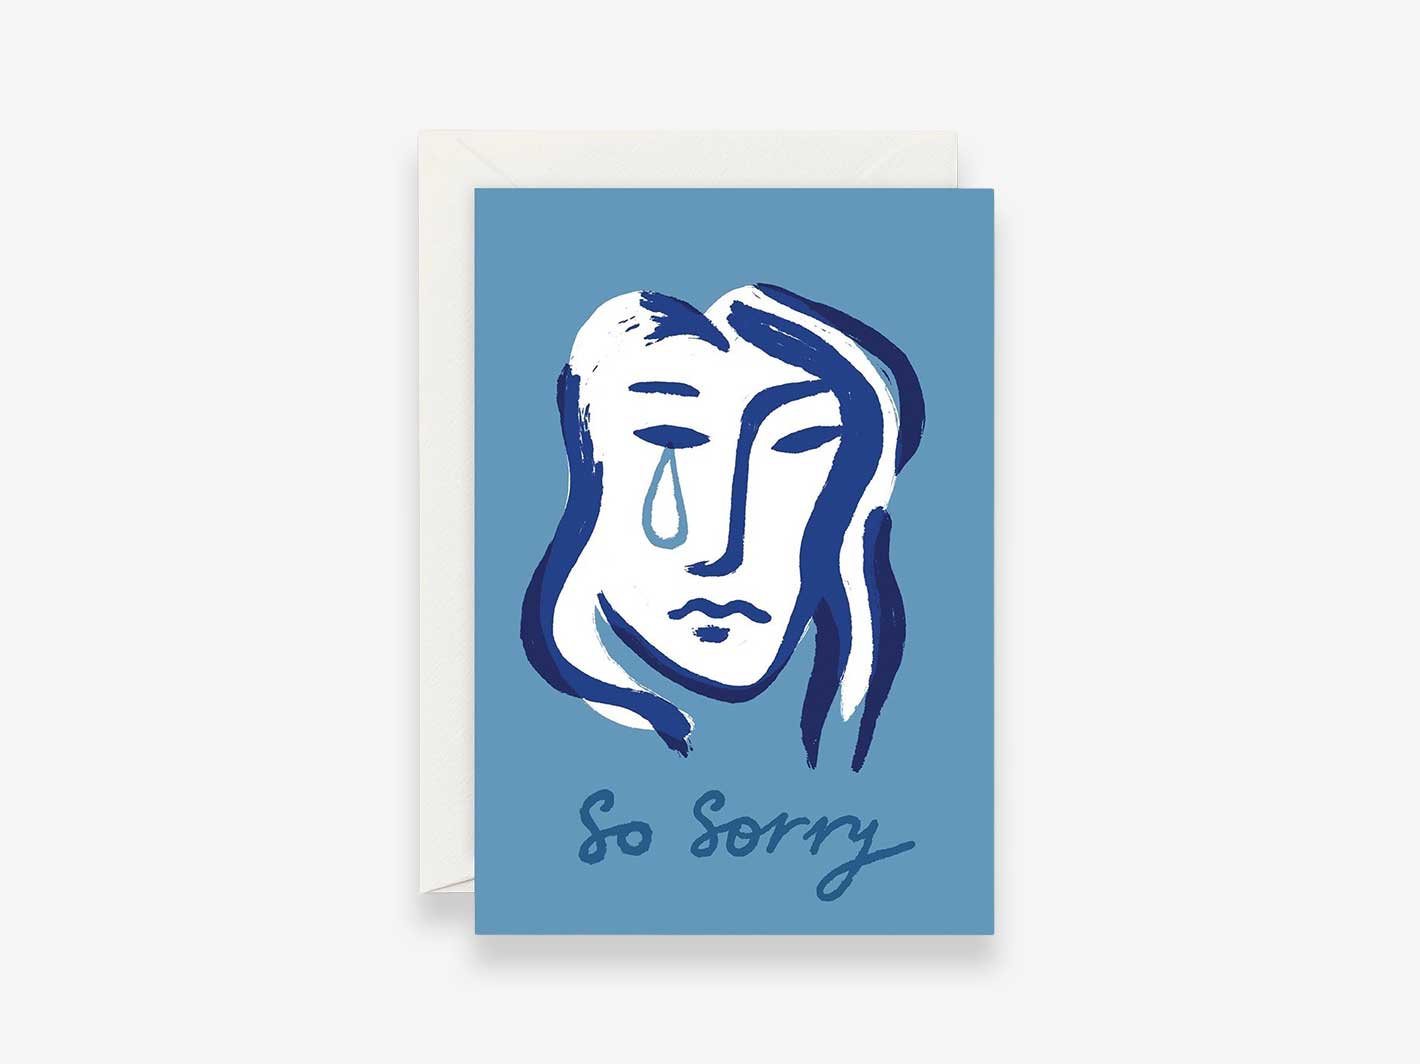 So Sorry Card